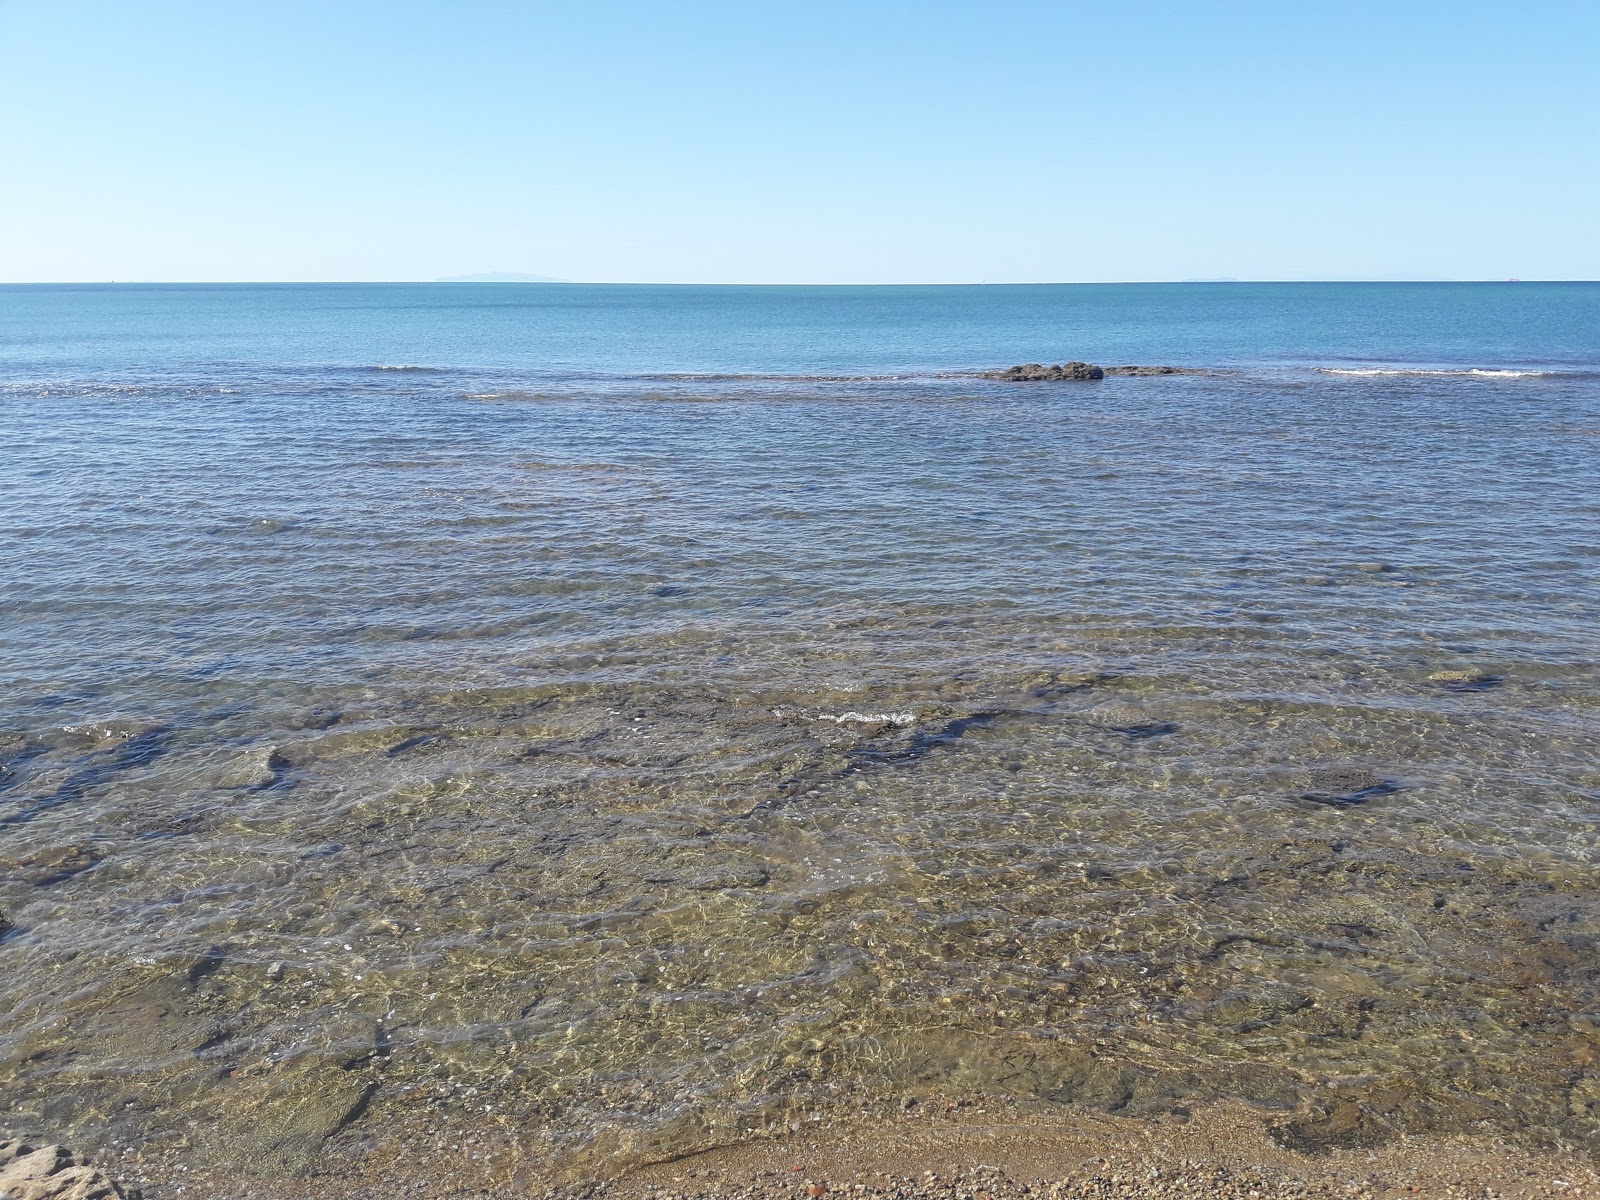 Spiaggia del sale'in fotoğrafı mavi sular yüzey ile